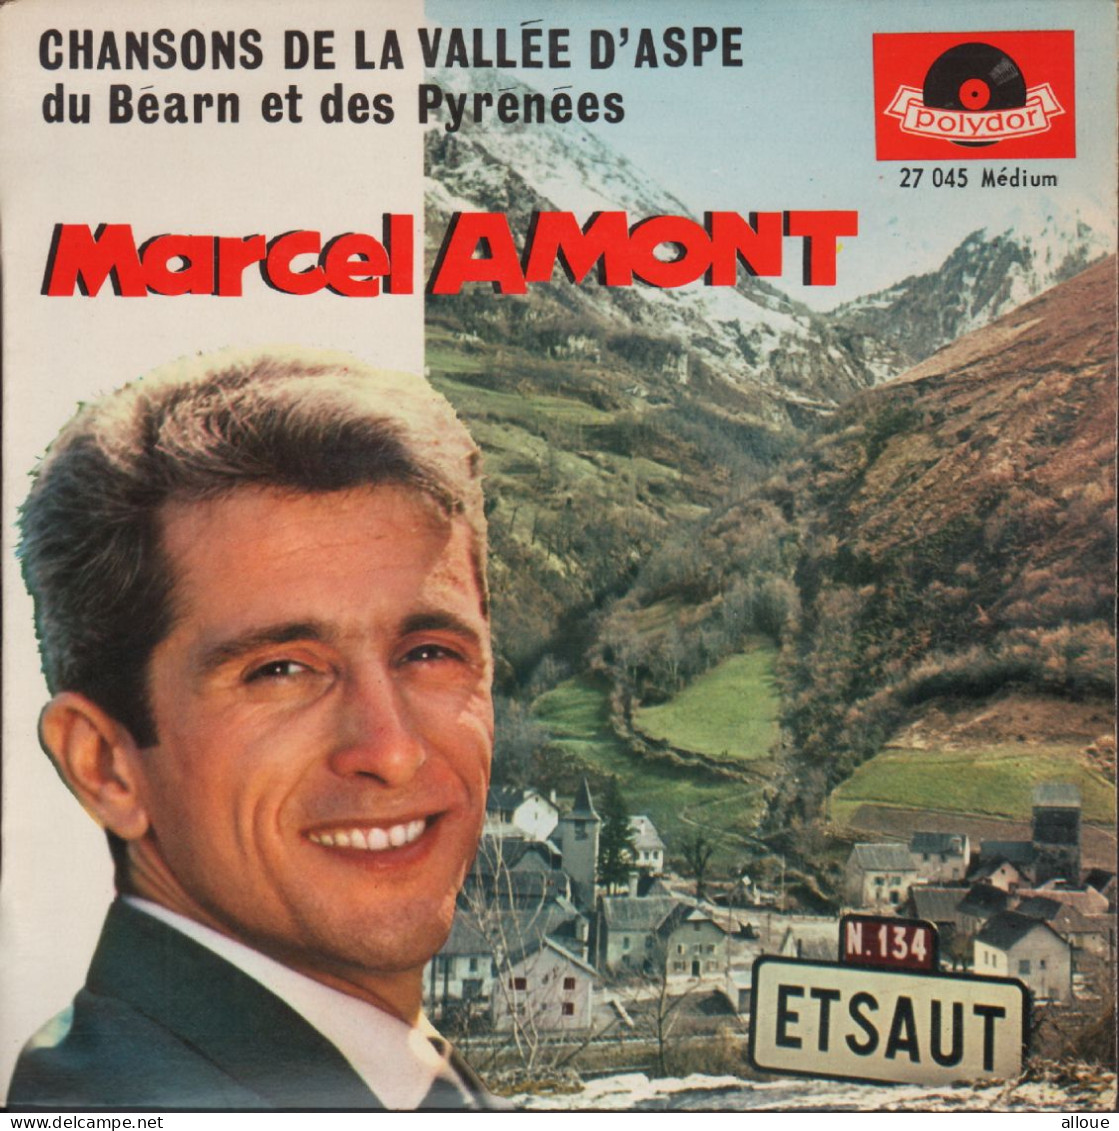 MARCEL AMONT - FR EP CHANSONS DE LA VALLEE D'ASPE : AQUEROS MOUNTAGNOS + 3 - Sonstige - Franz. Chansons